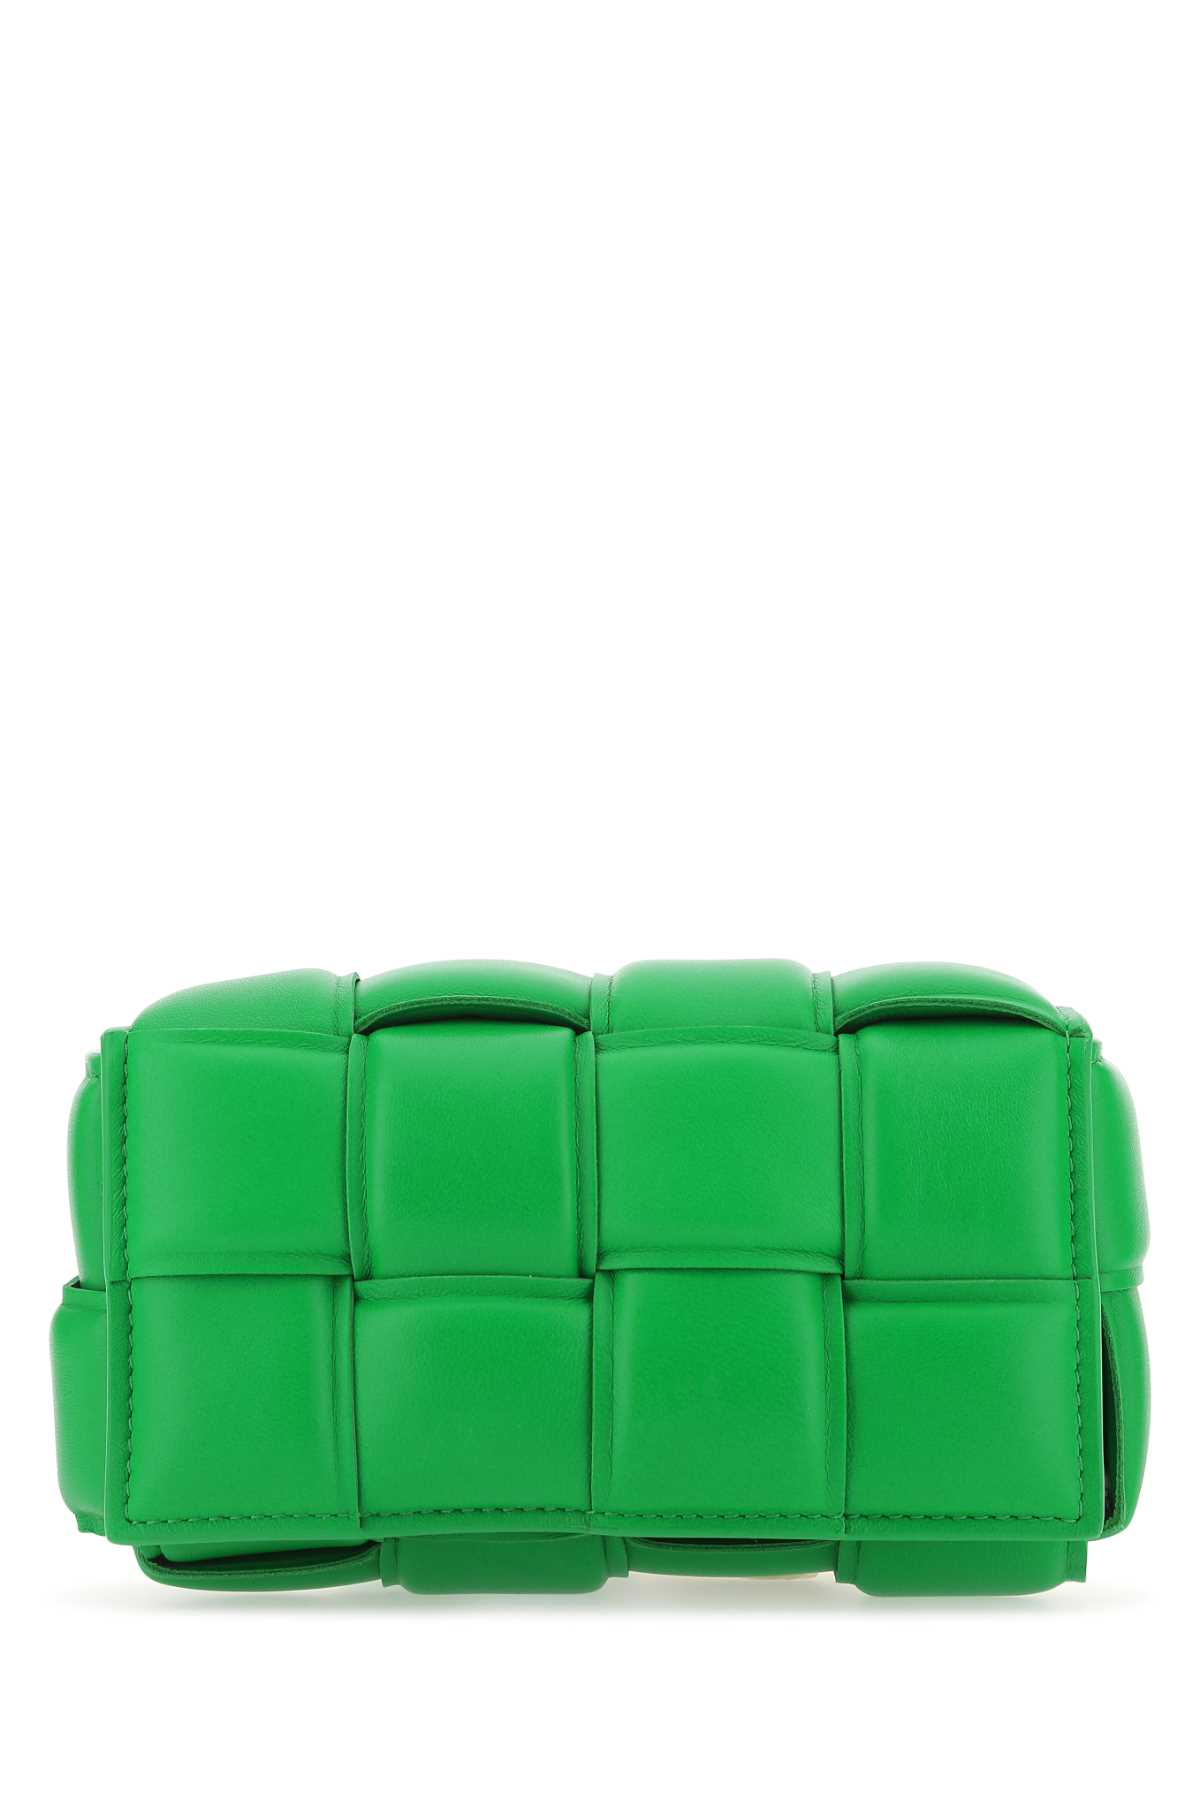 Bottega Veneta Grass Green Nappa Leather Padded Cassette Belt Bag